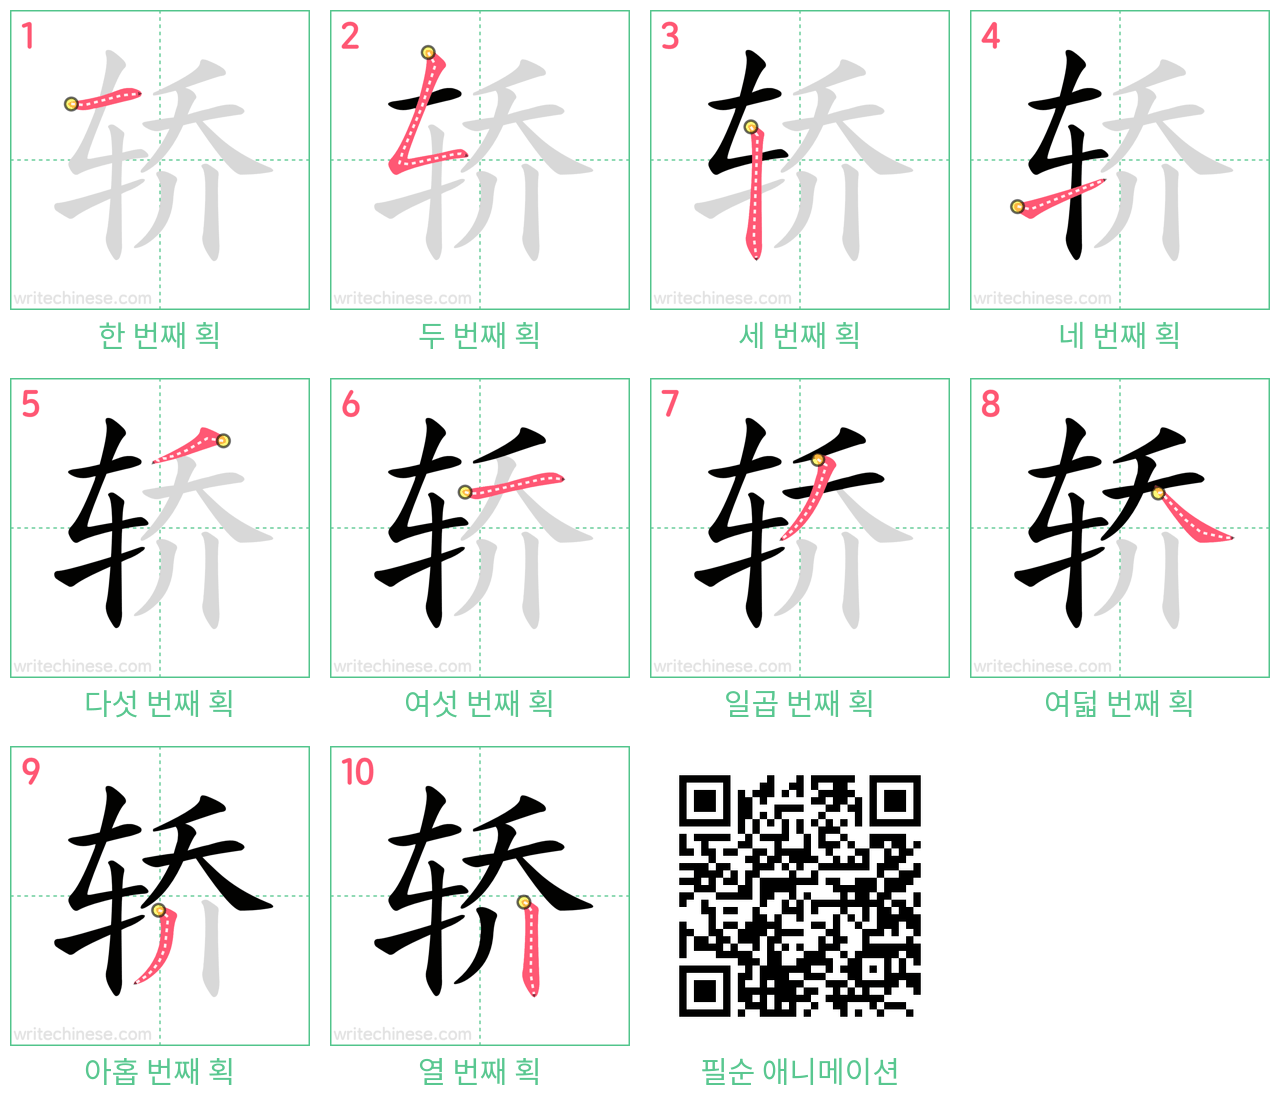 轿 step-by-step stroke order diagrams